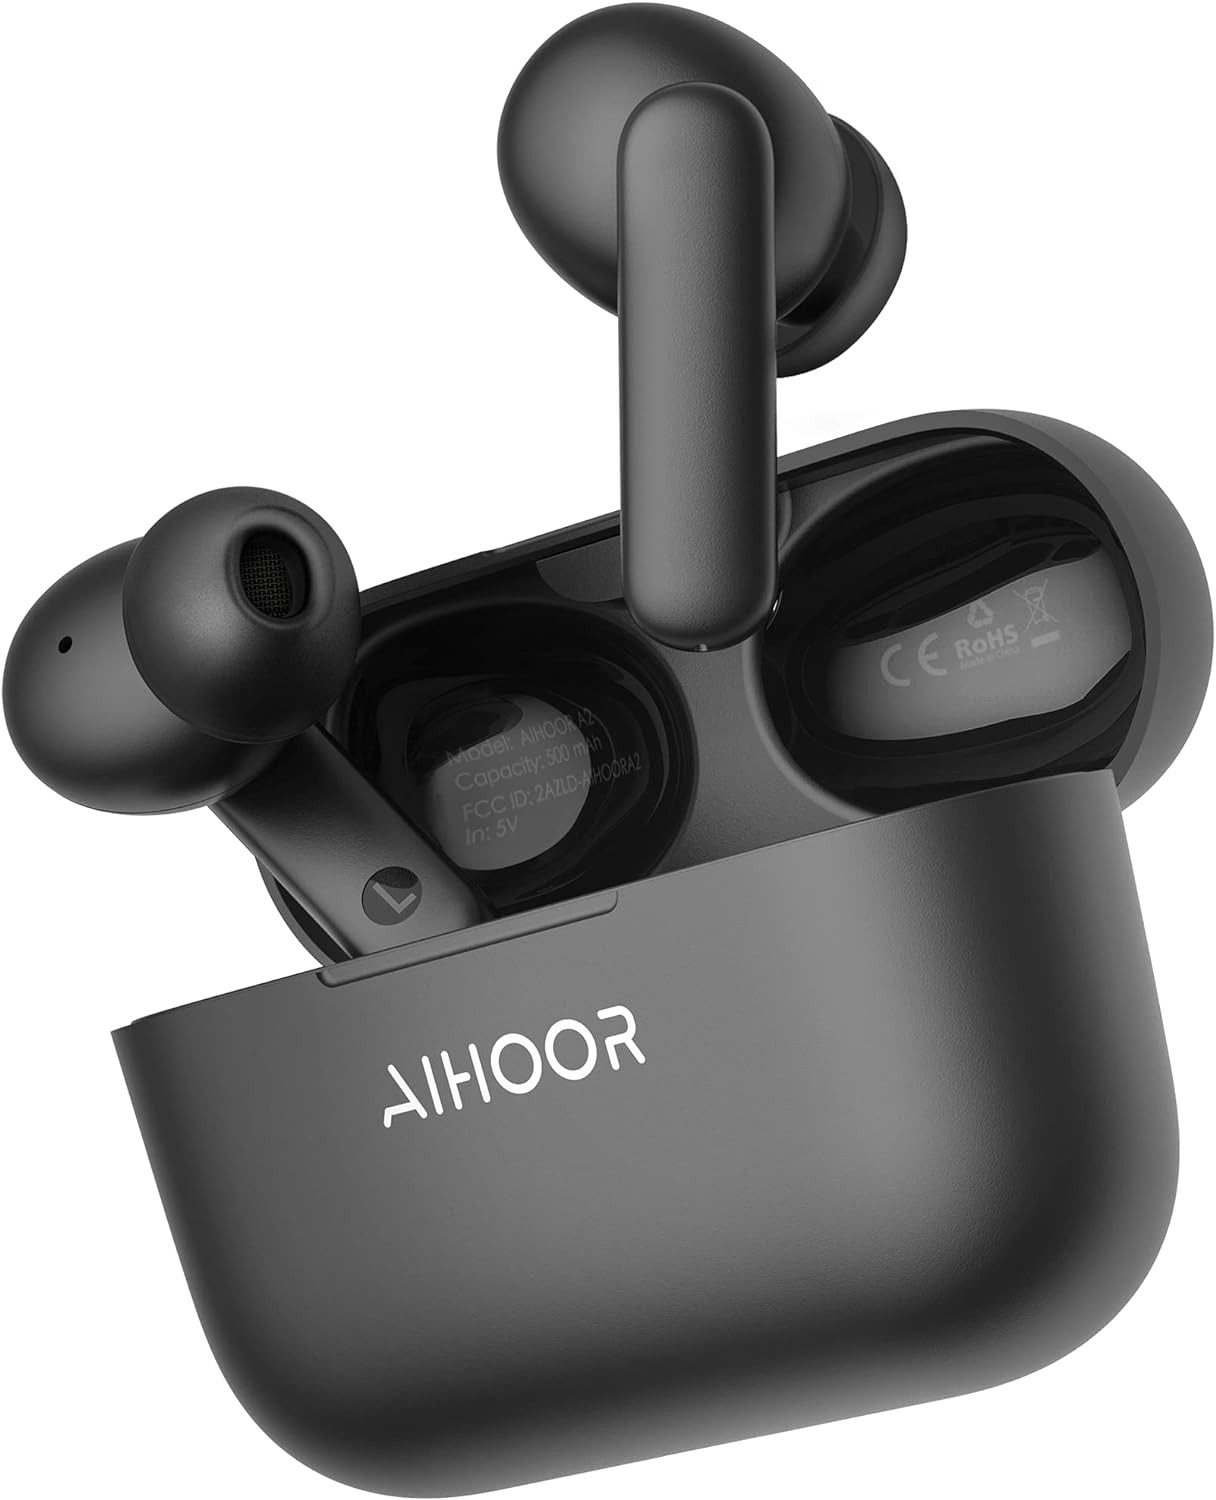 AIHOOR Kabellos Bluetooth 5.0 Immersiver Deep Bass für iOS und Android Phones In-Ear-Kopfhörer (Dynamischer Bass und klare Höhen für ein ausgewogenes und beeindruckendes Klangerlebnis., mit Mikrofon,30H Spielzeit,Sport Wasserdicht)